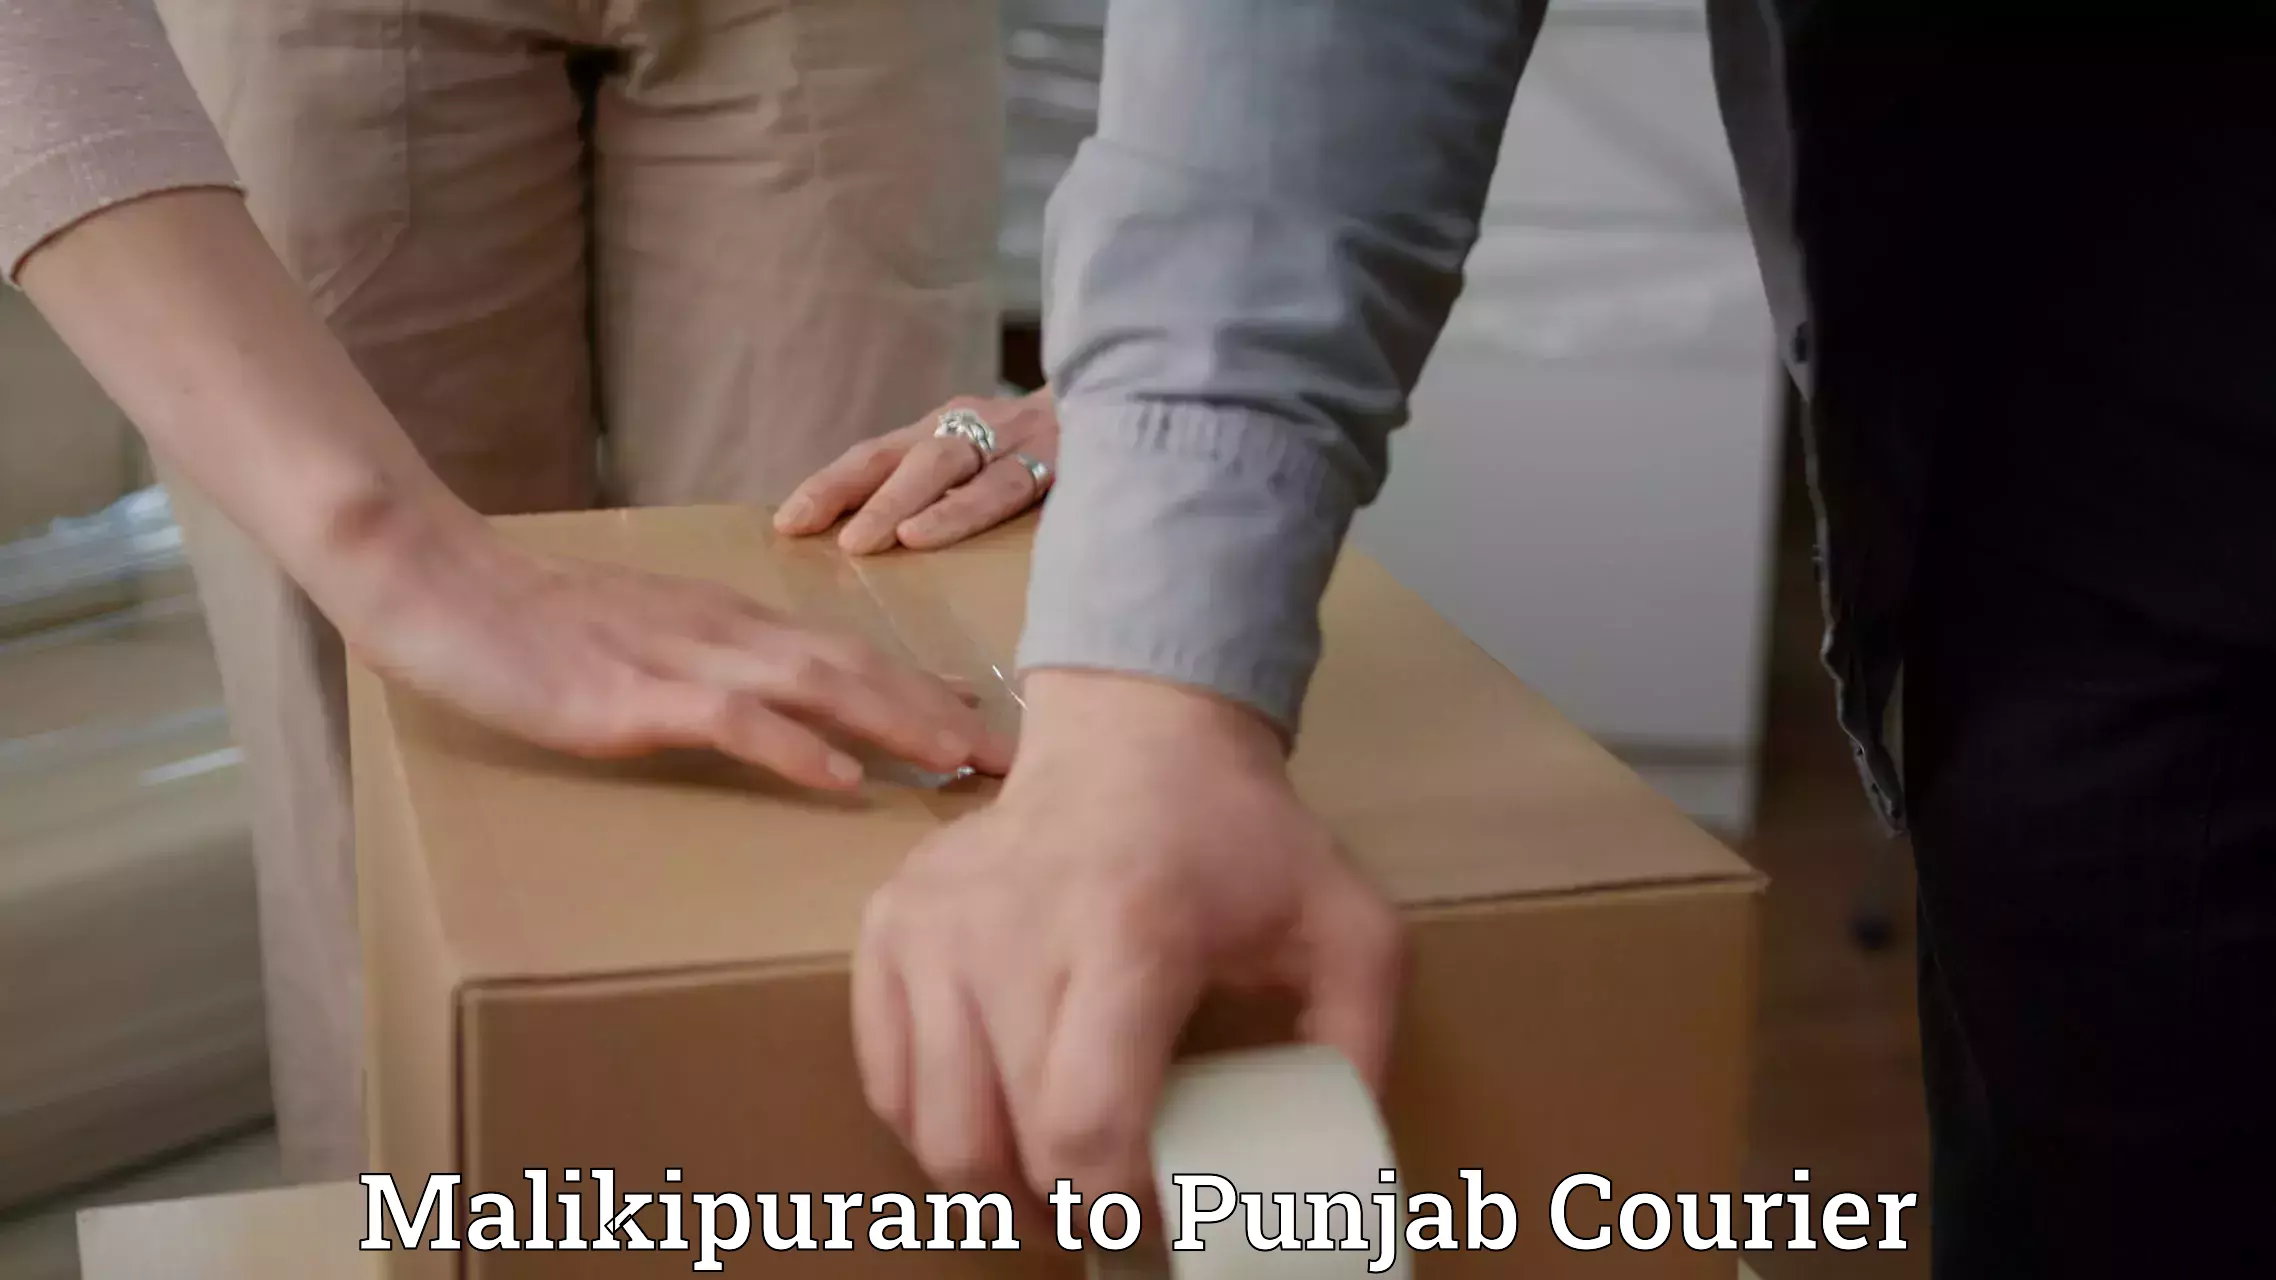 Efficient shipping platforms Malikipuram to Sultanpur Lodhi